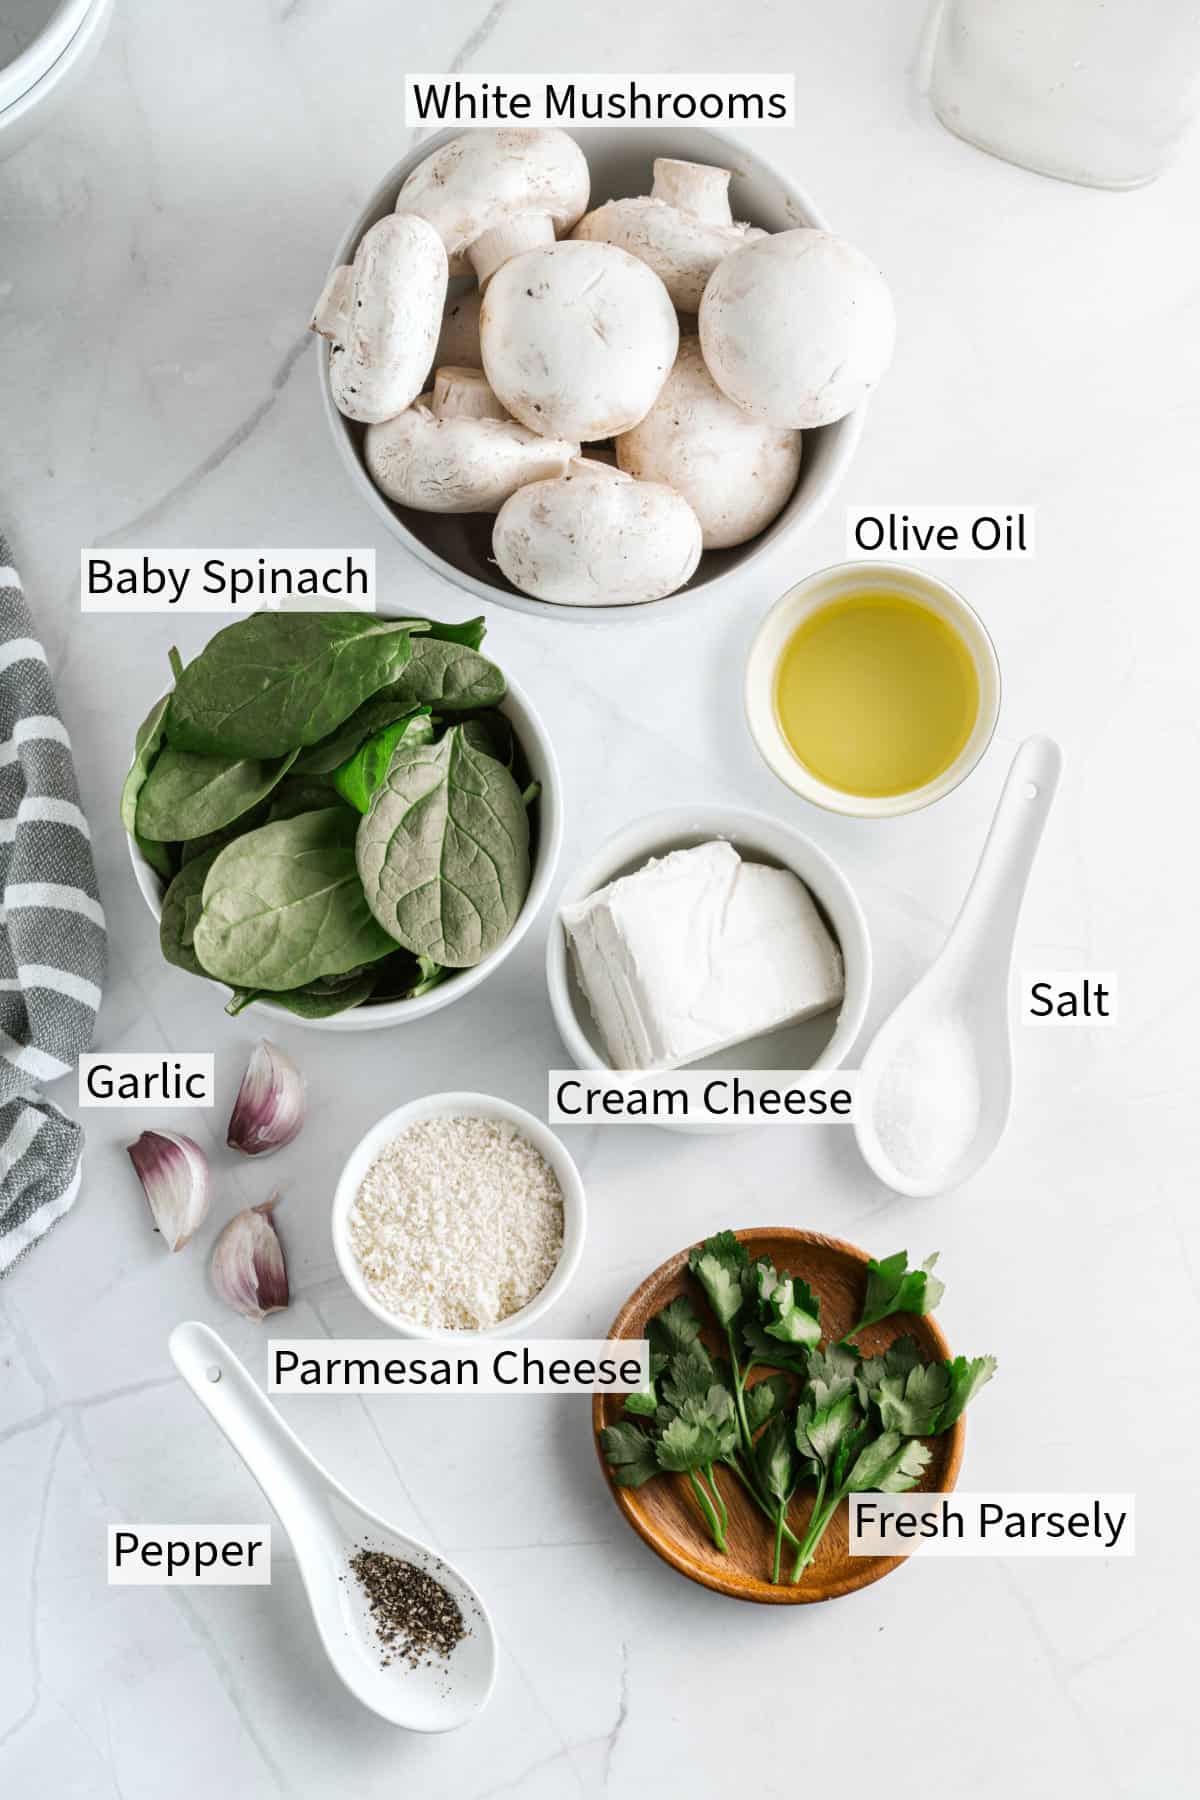 Ingredients for stuffed mushrooms.